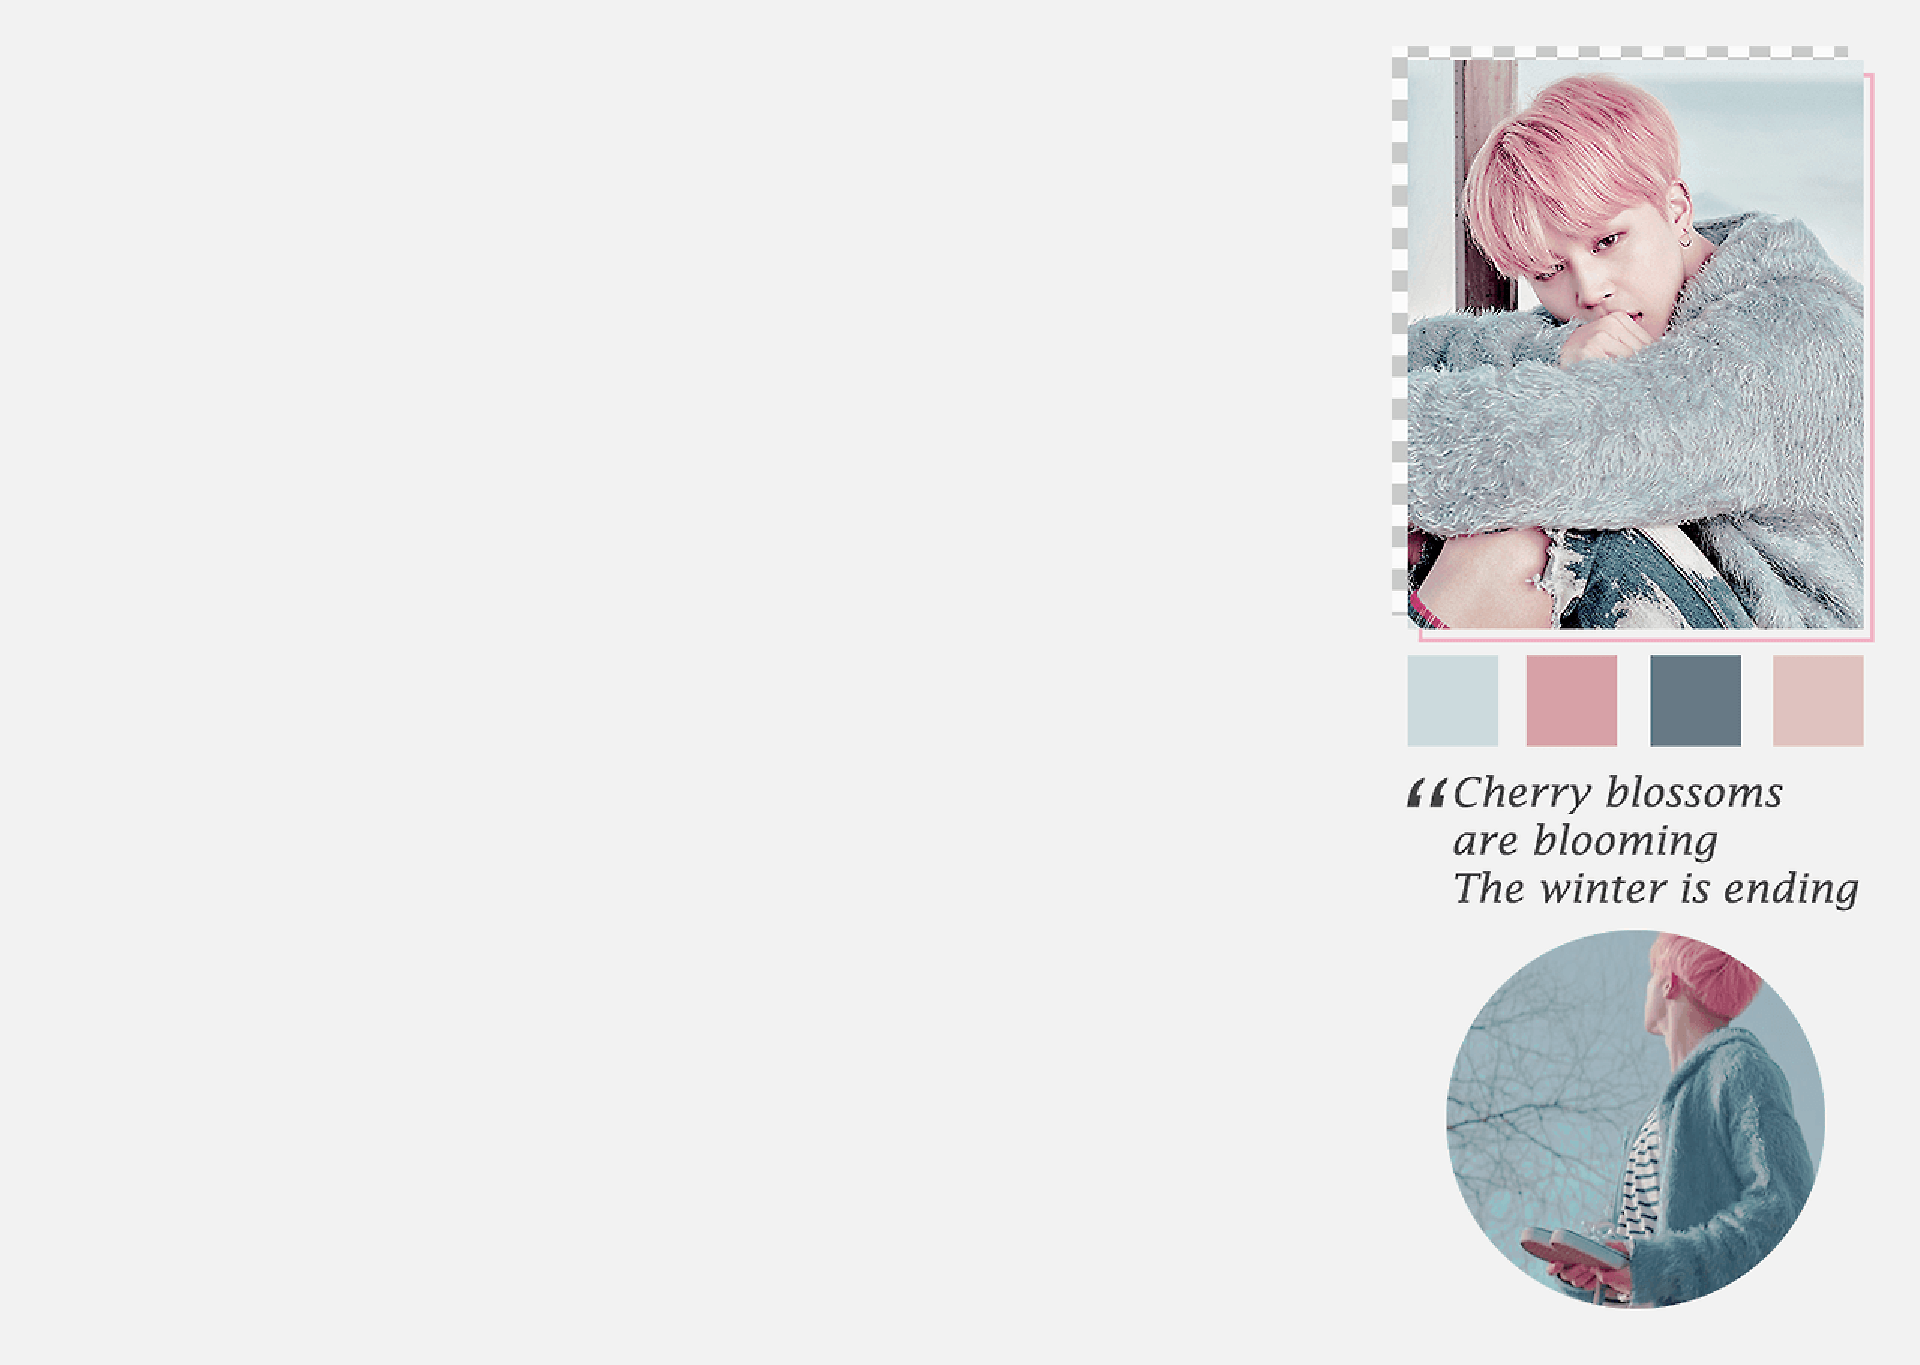 43+] Kpop Phone Wallpaper - WallpaperSafari